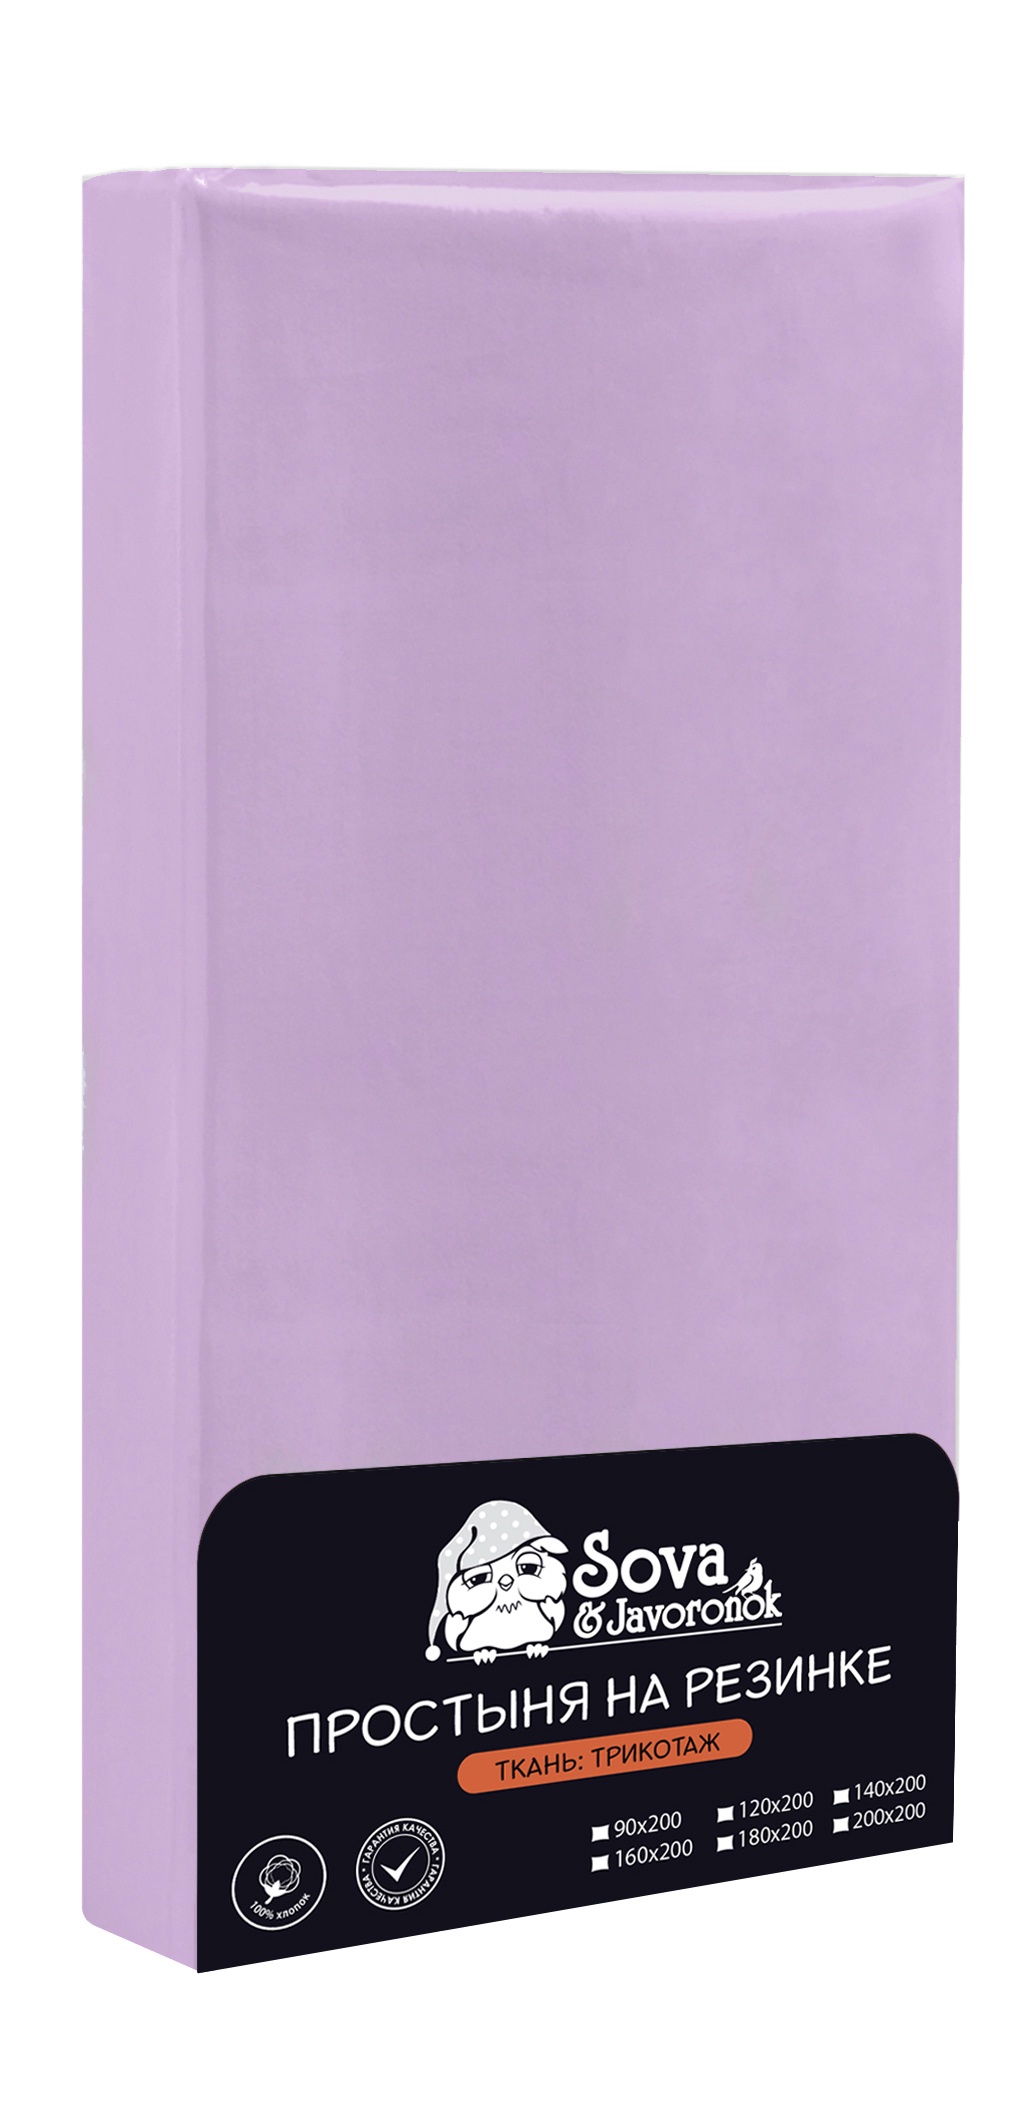 Простынь Sova & Javoronok на резинке, 803113696, фиолетовый, 160х200 см